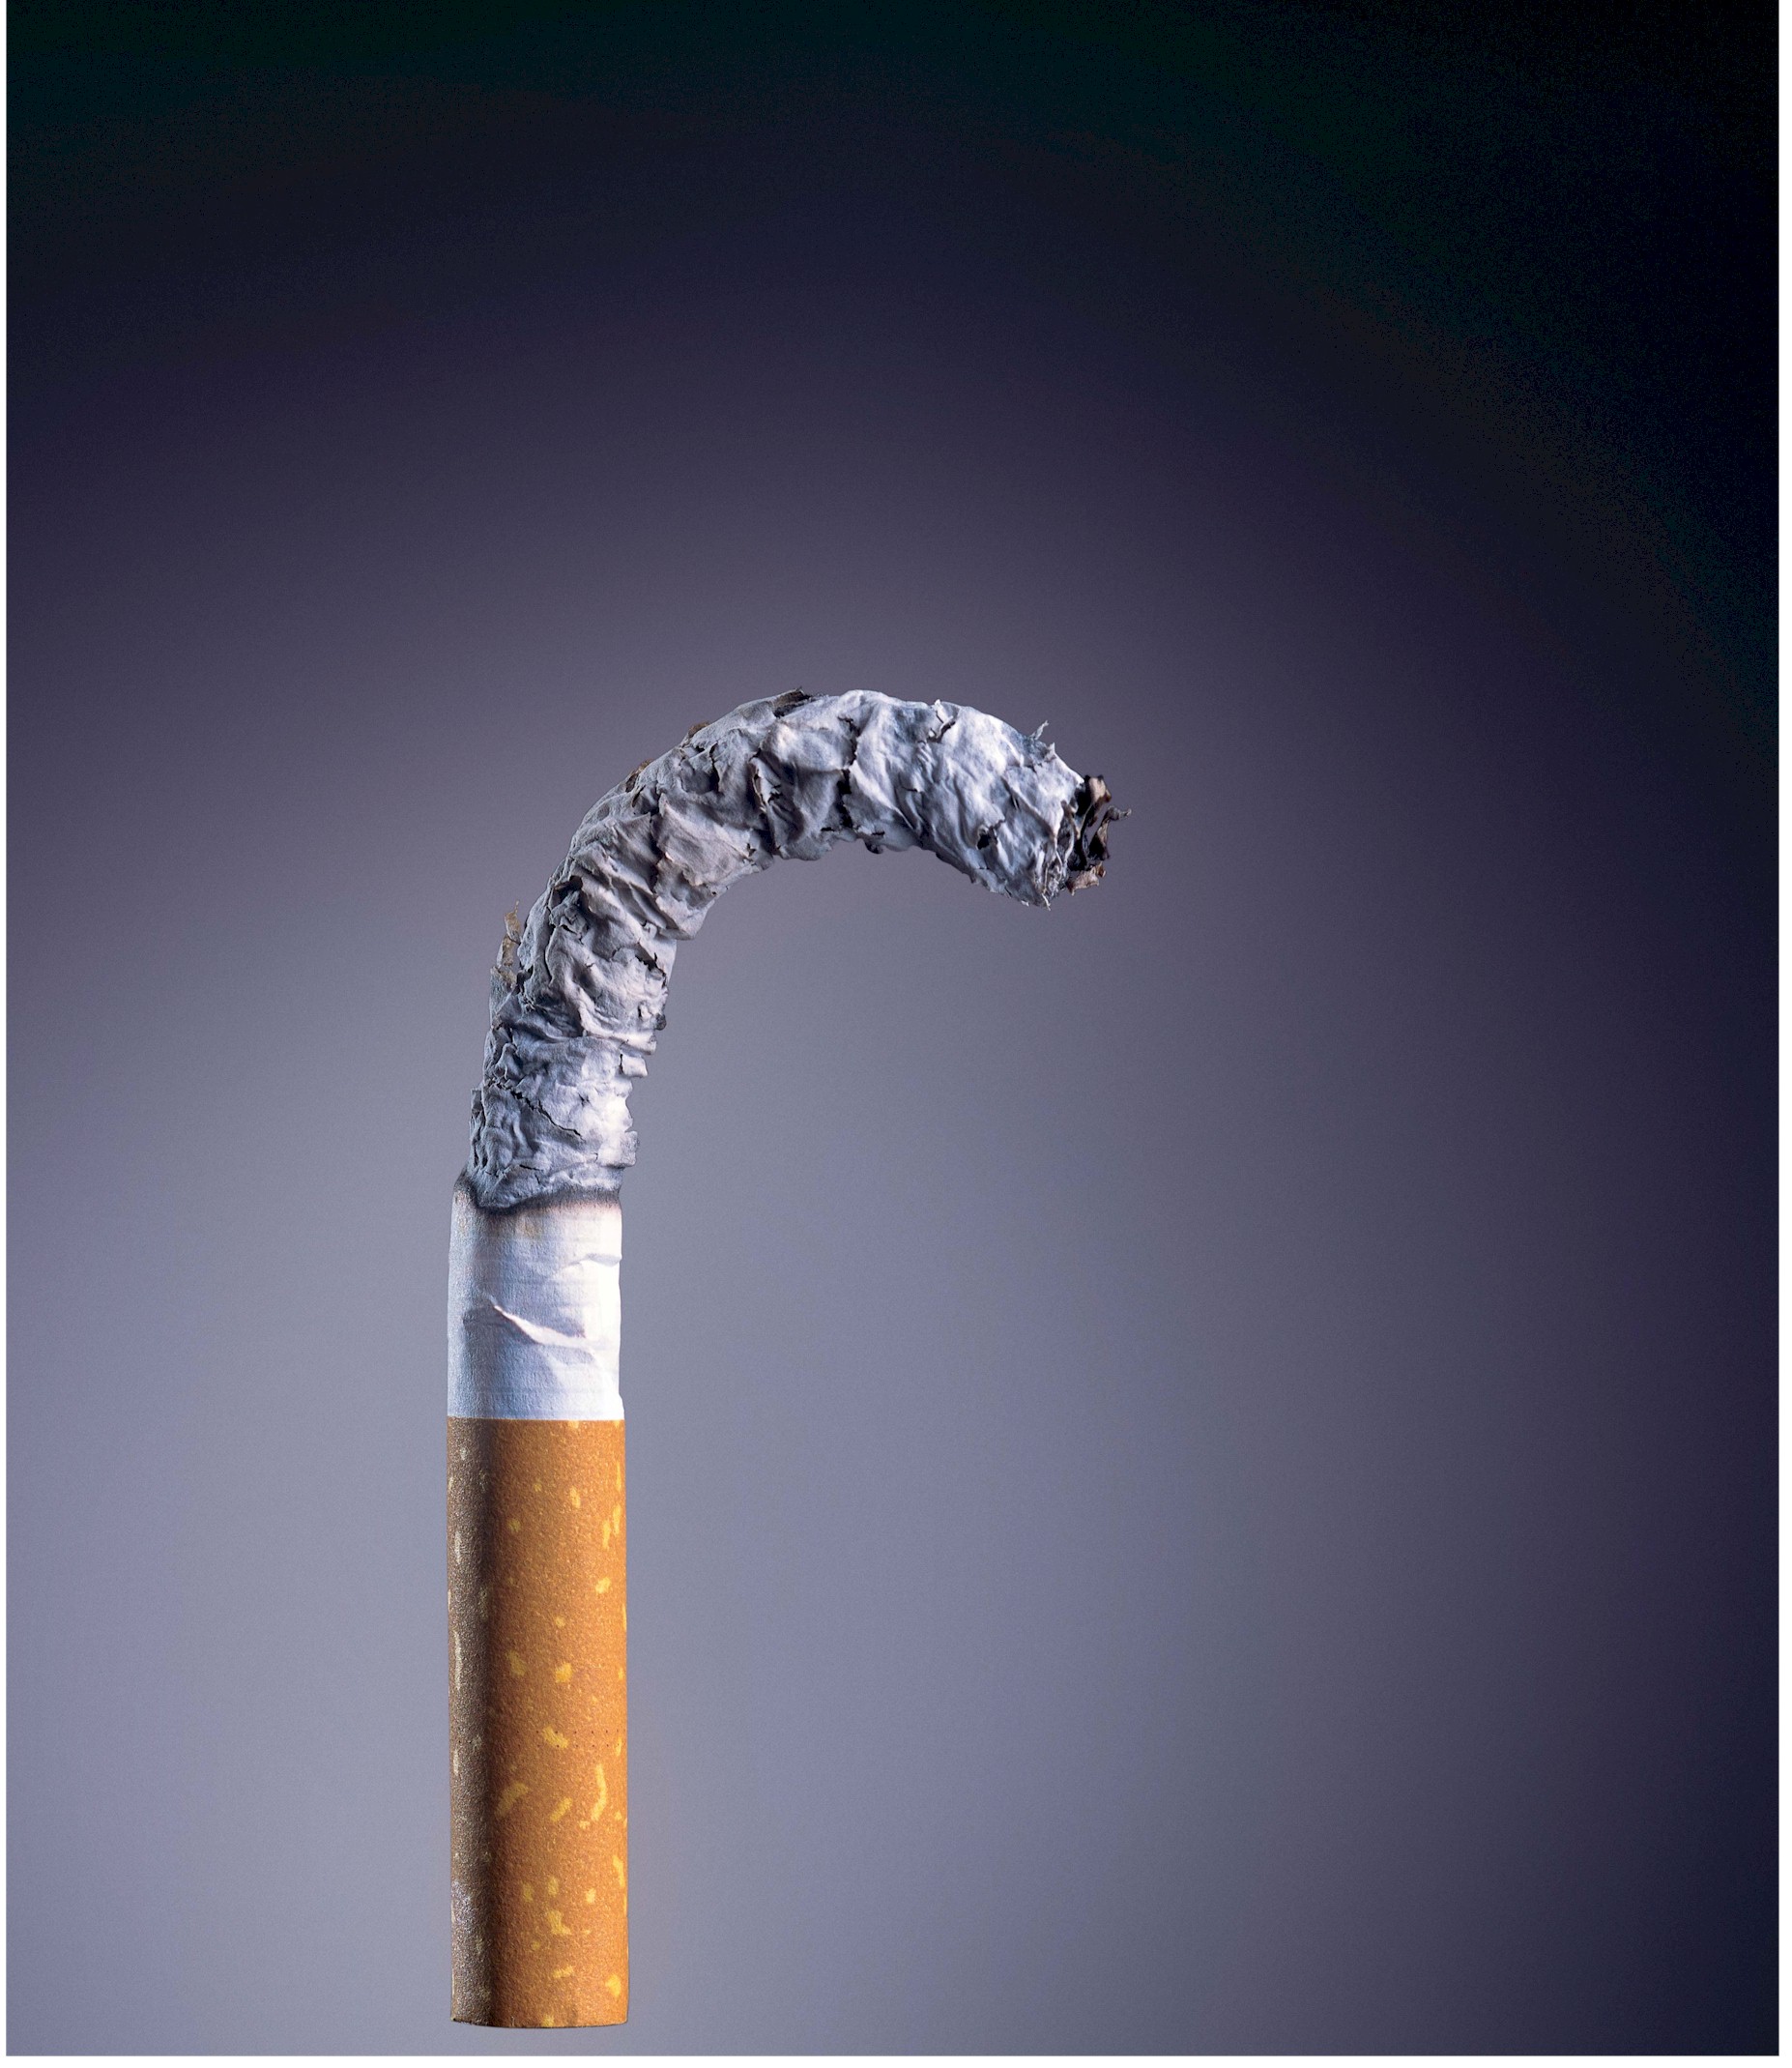 imptencia dohányzók nemdohányzók nemi vágy csökkenés aktív dohányzók dohányos passzív dohányzók dohányos passzív dohányzás kisgyermekkorban dohányfüst tüdőszűrés erős dohányos